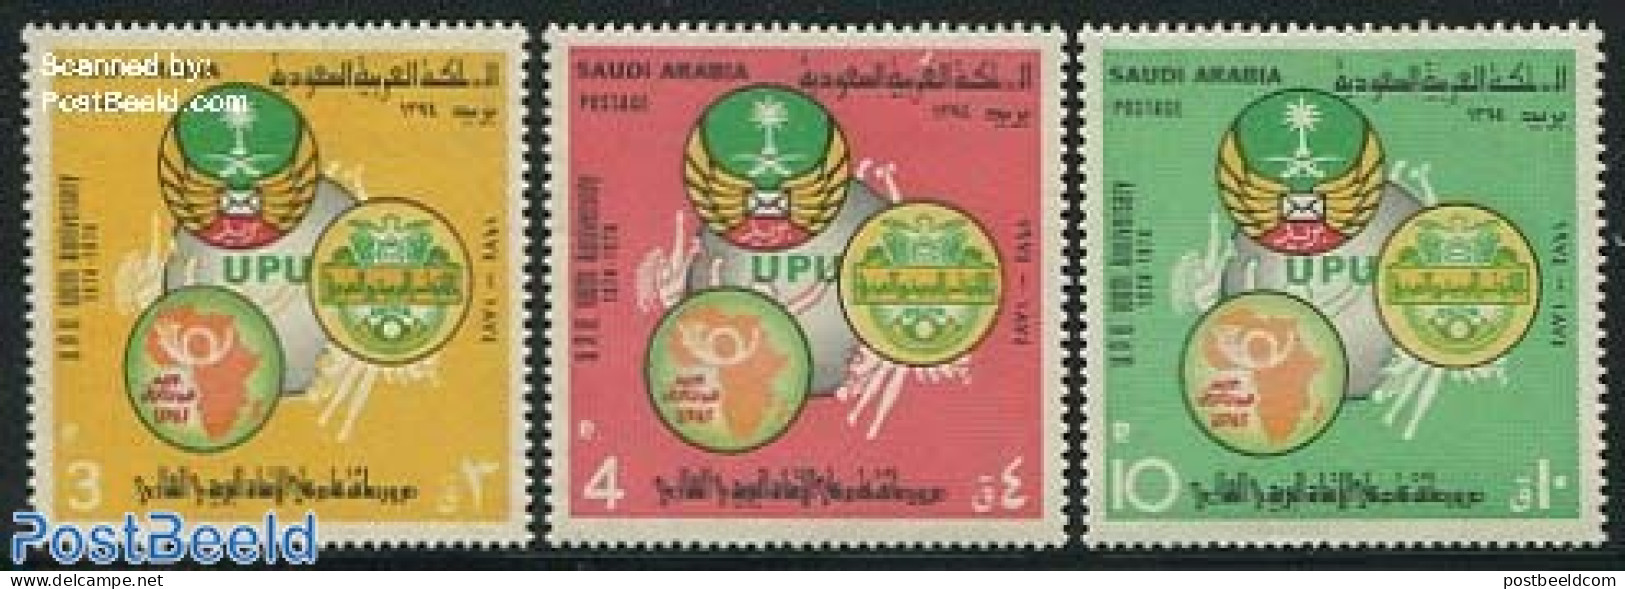 Saudi Arabia 1974 UPU Centenary 3v, Mint NH, U.P.U. - U.P.U.